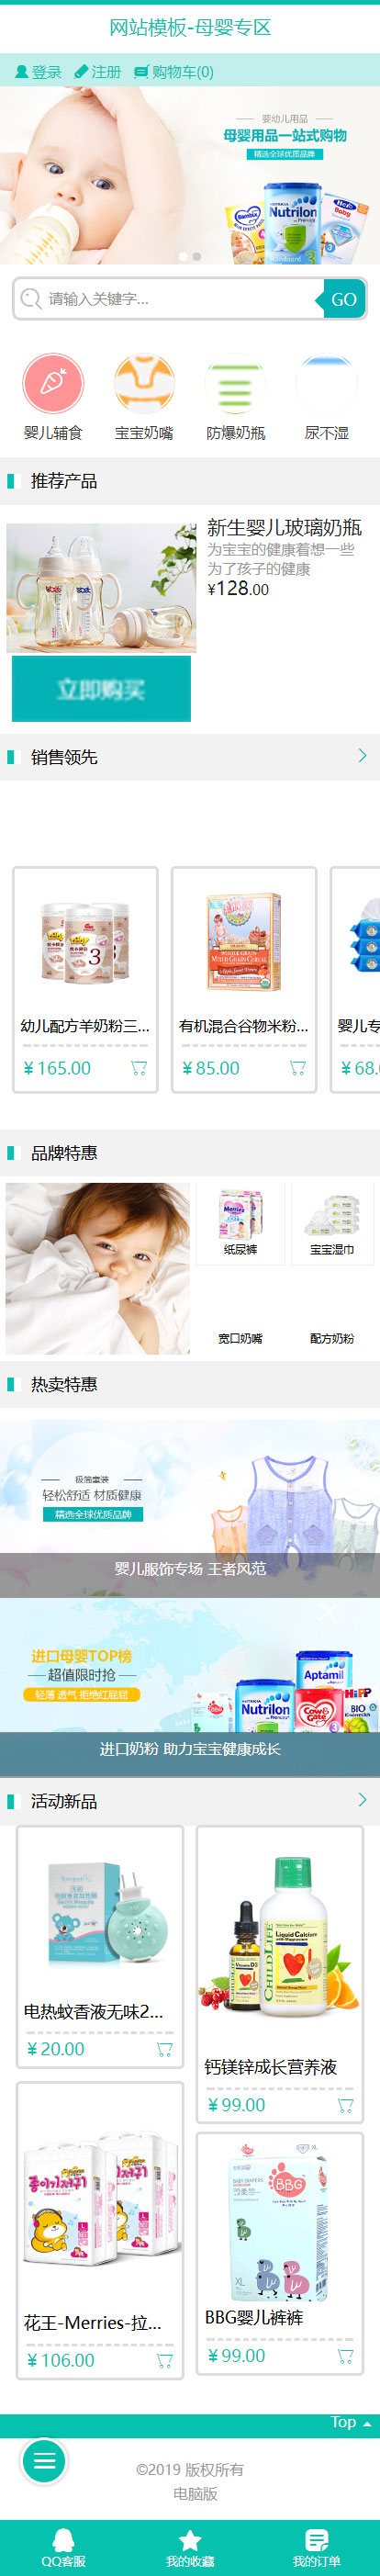 婴儿用品专卖店在线商城网站模板